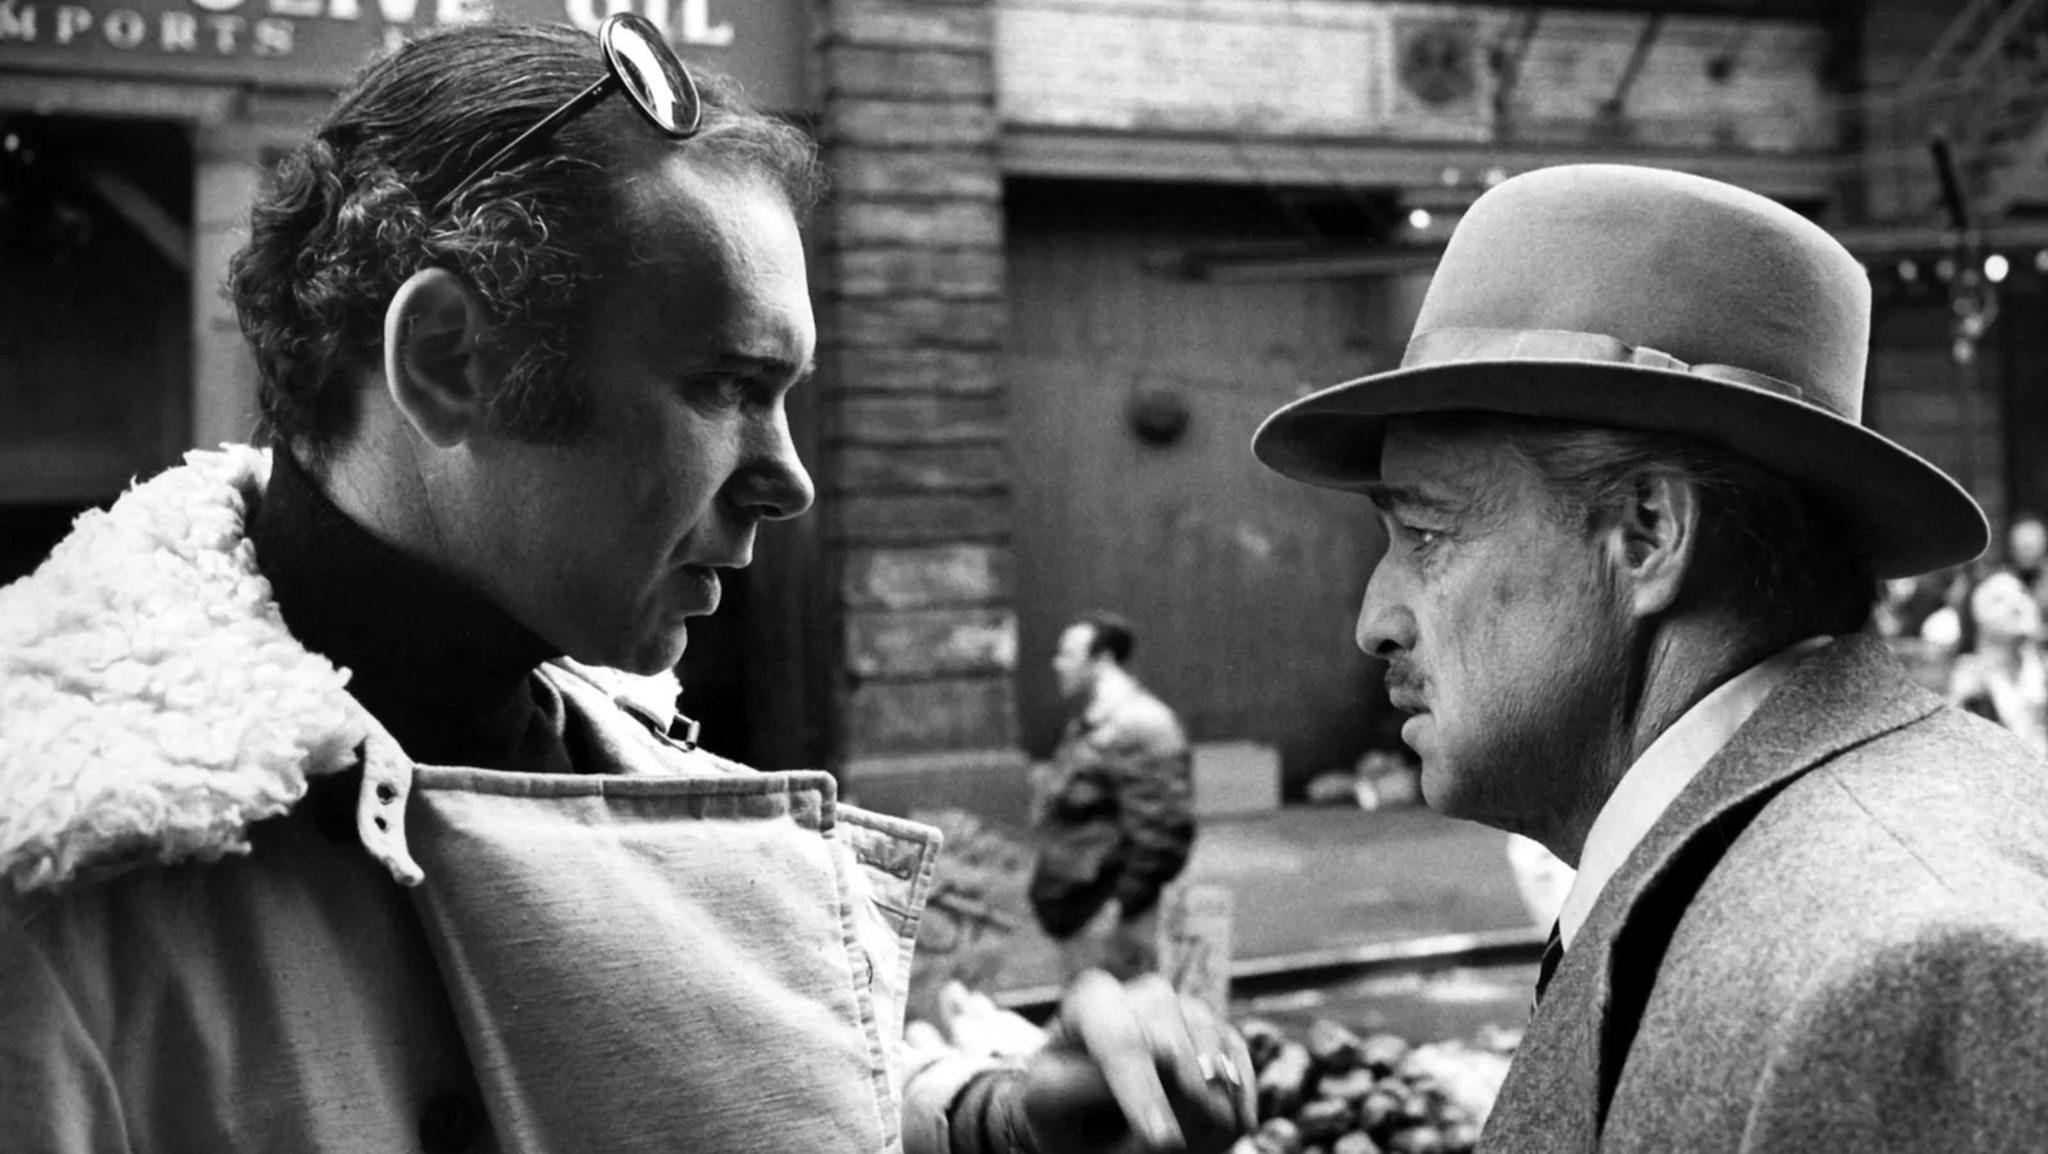 El productor Al Ruddy conversa con Marlon Brando en el set de rodaje de 'El padrino'